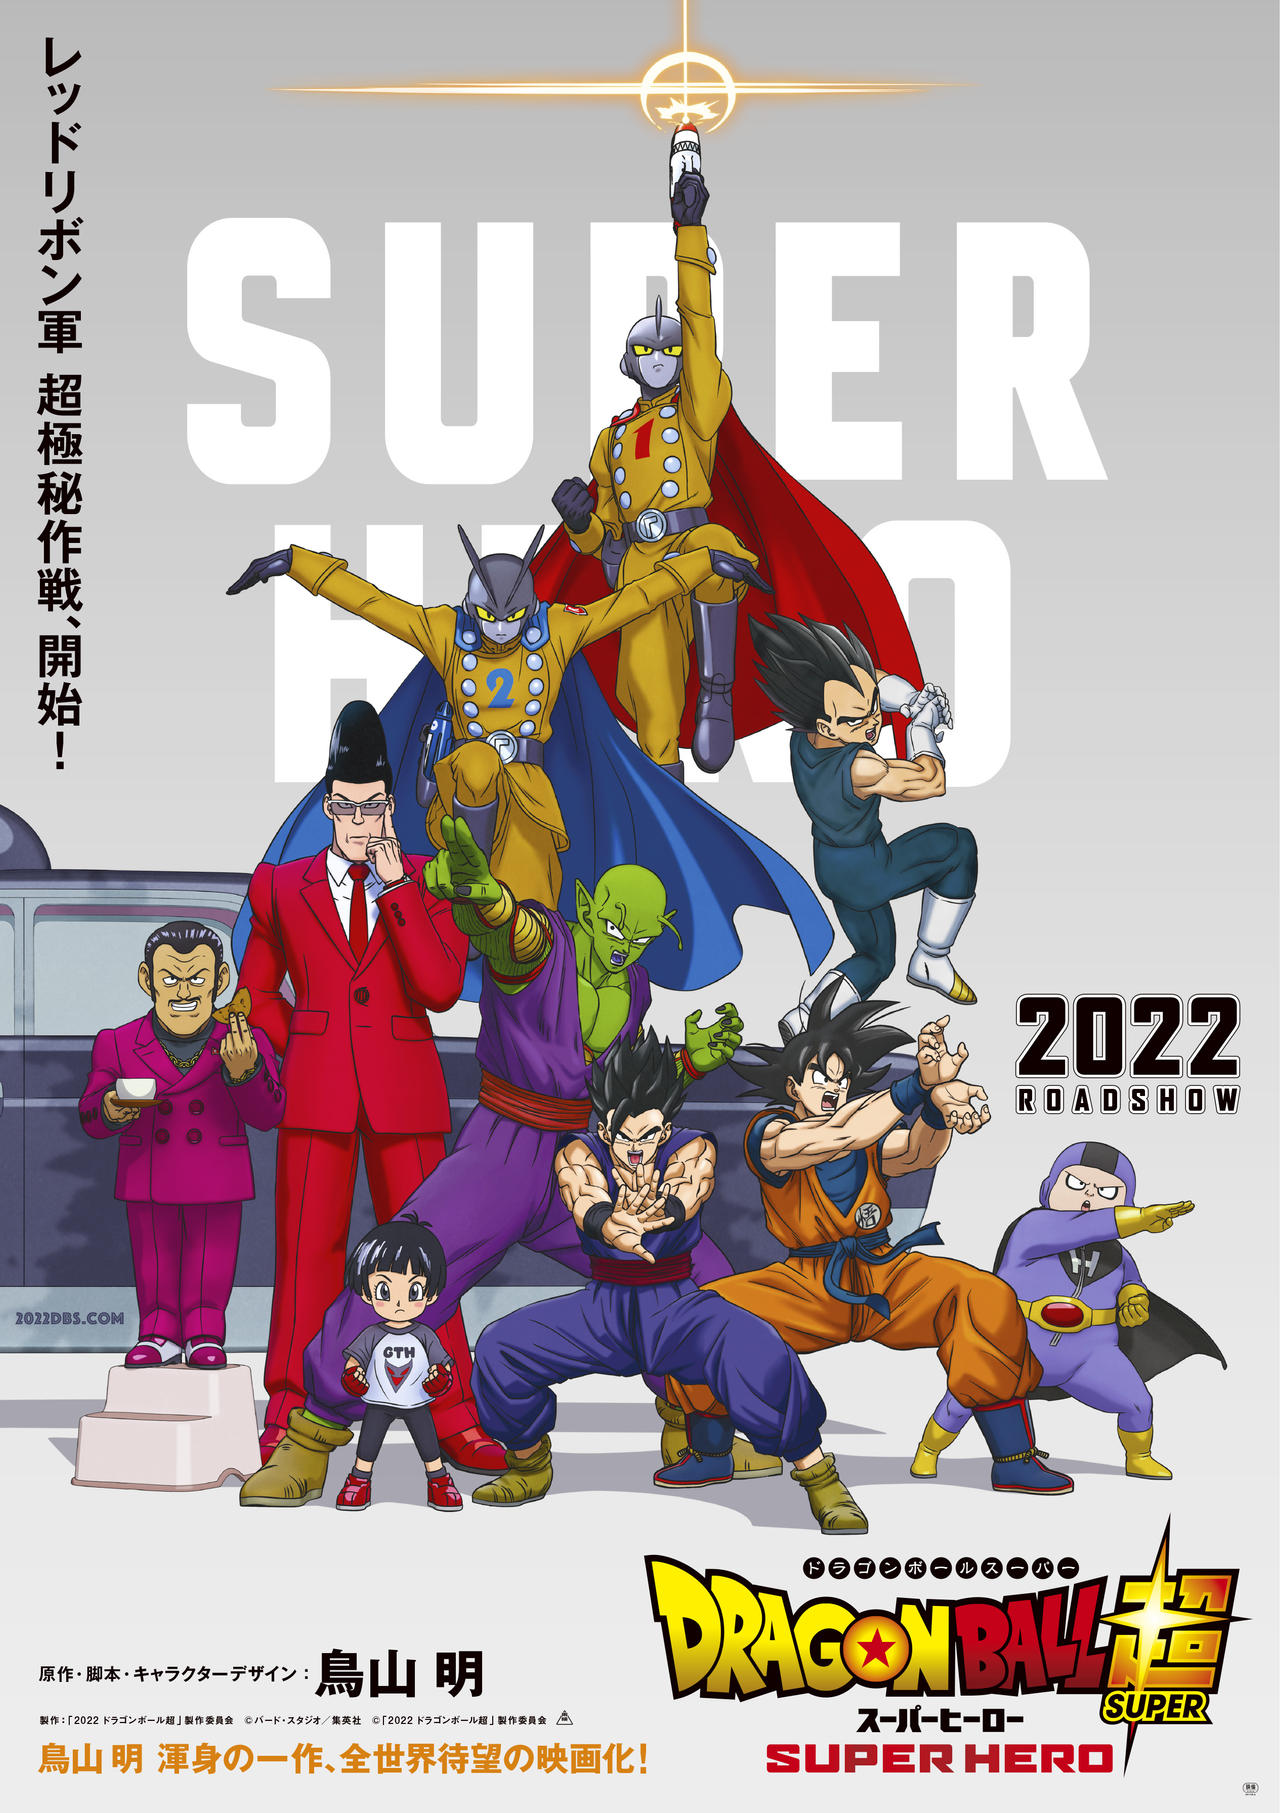 Entrevistas com dubladores do filme Dragon Ball Super: SUPER HERO